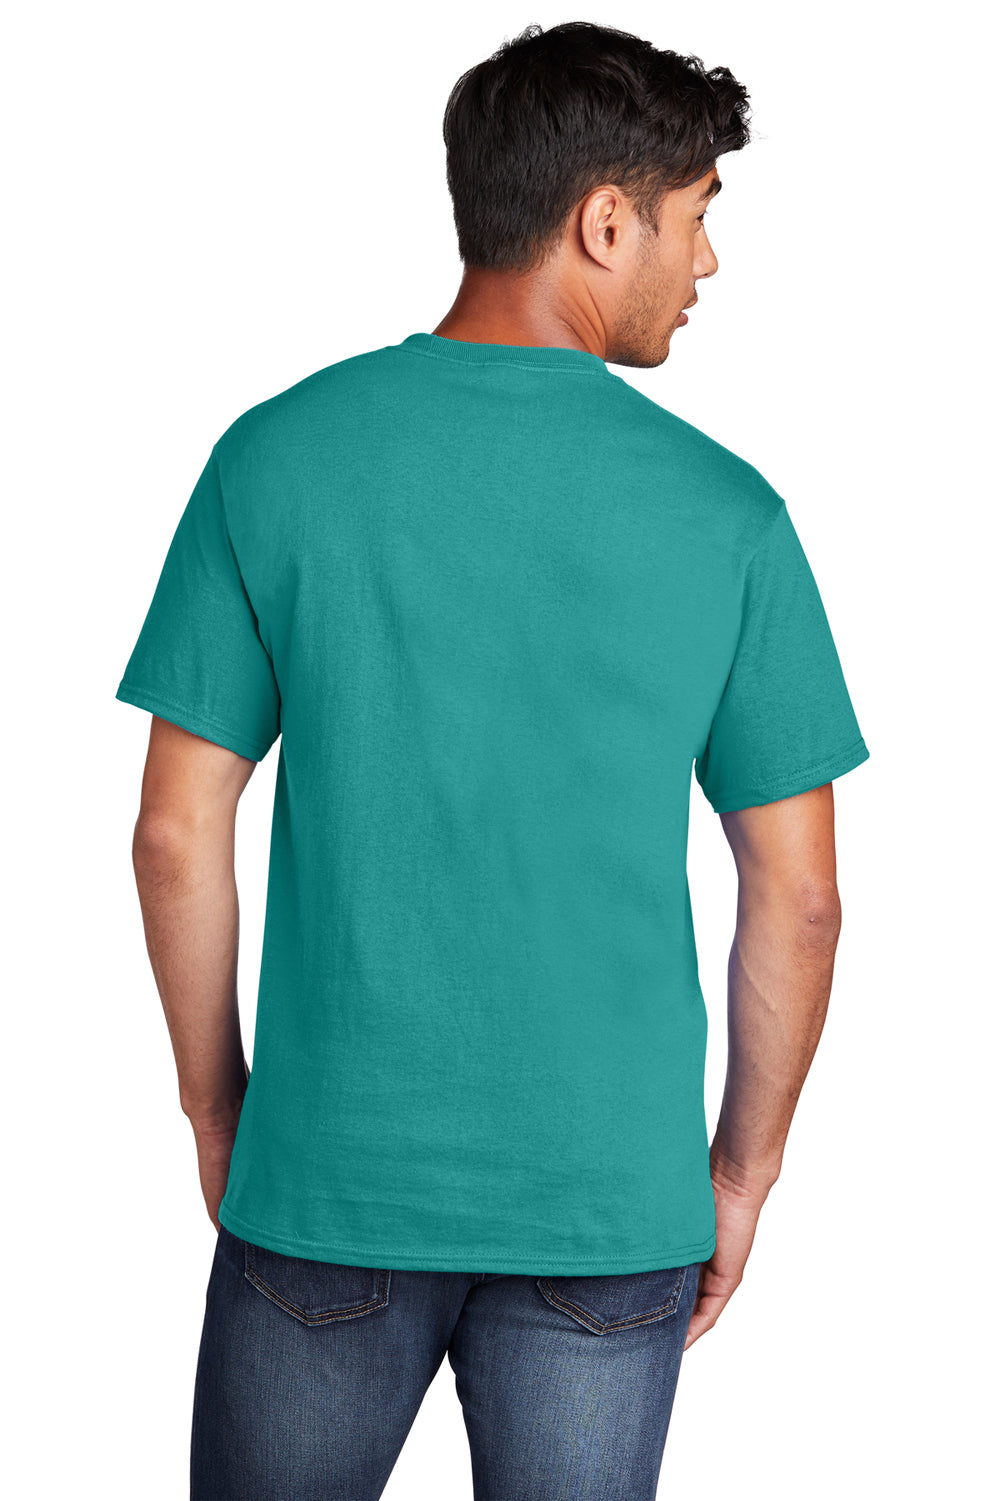 Port & Company PC54/PC54T Mens Core Short Sleeve Crewneck T-Shirt Bright Aqua Blue Back